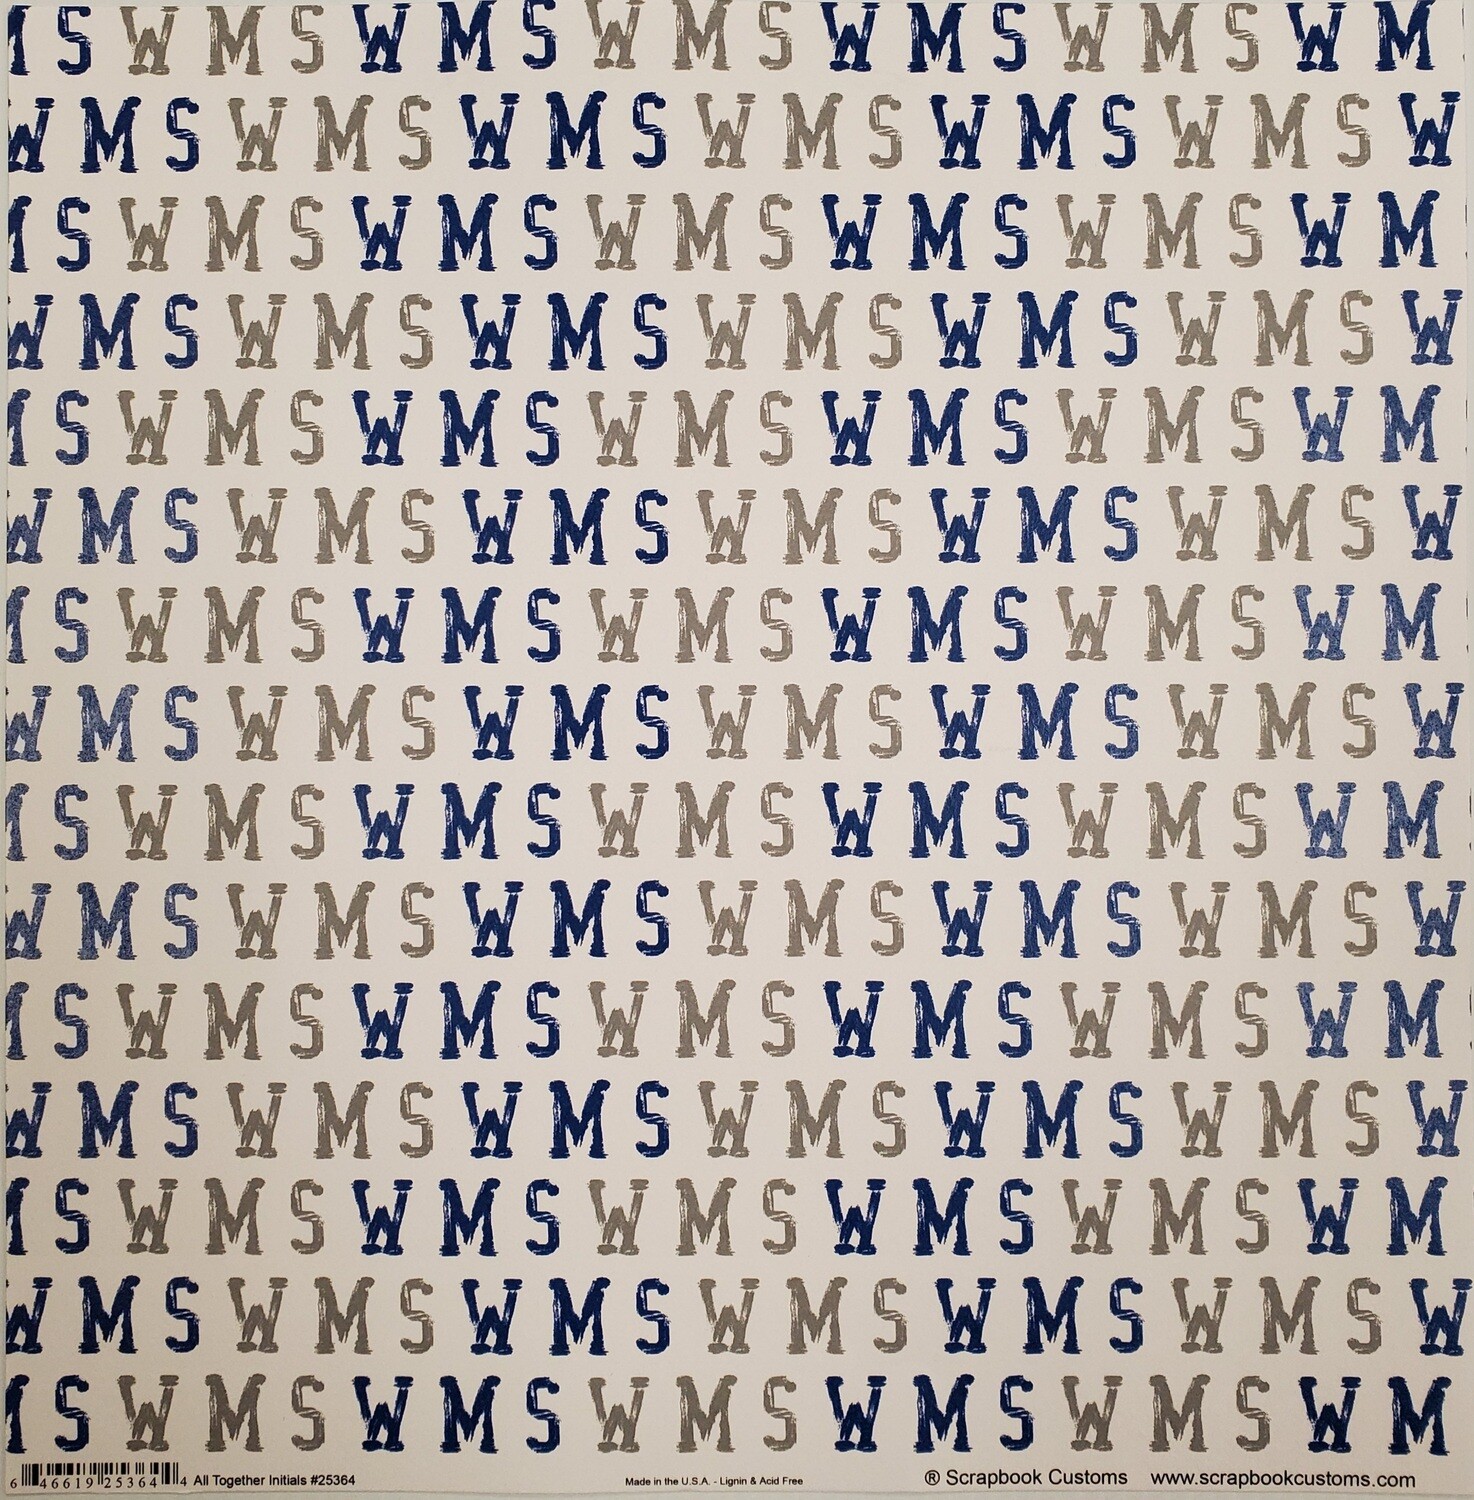 Willowbrook Scrapbook Paper, WMS Initials, Blue & Grey